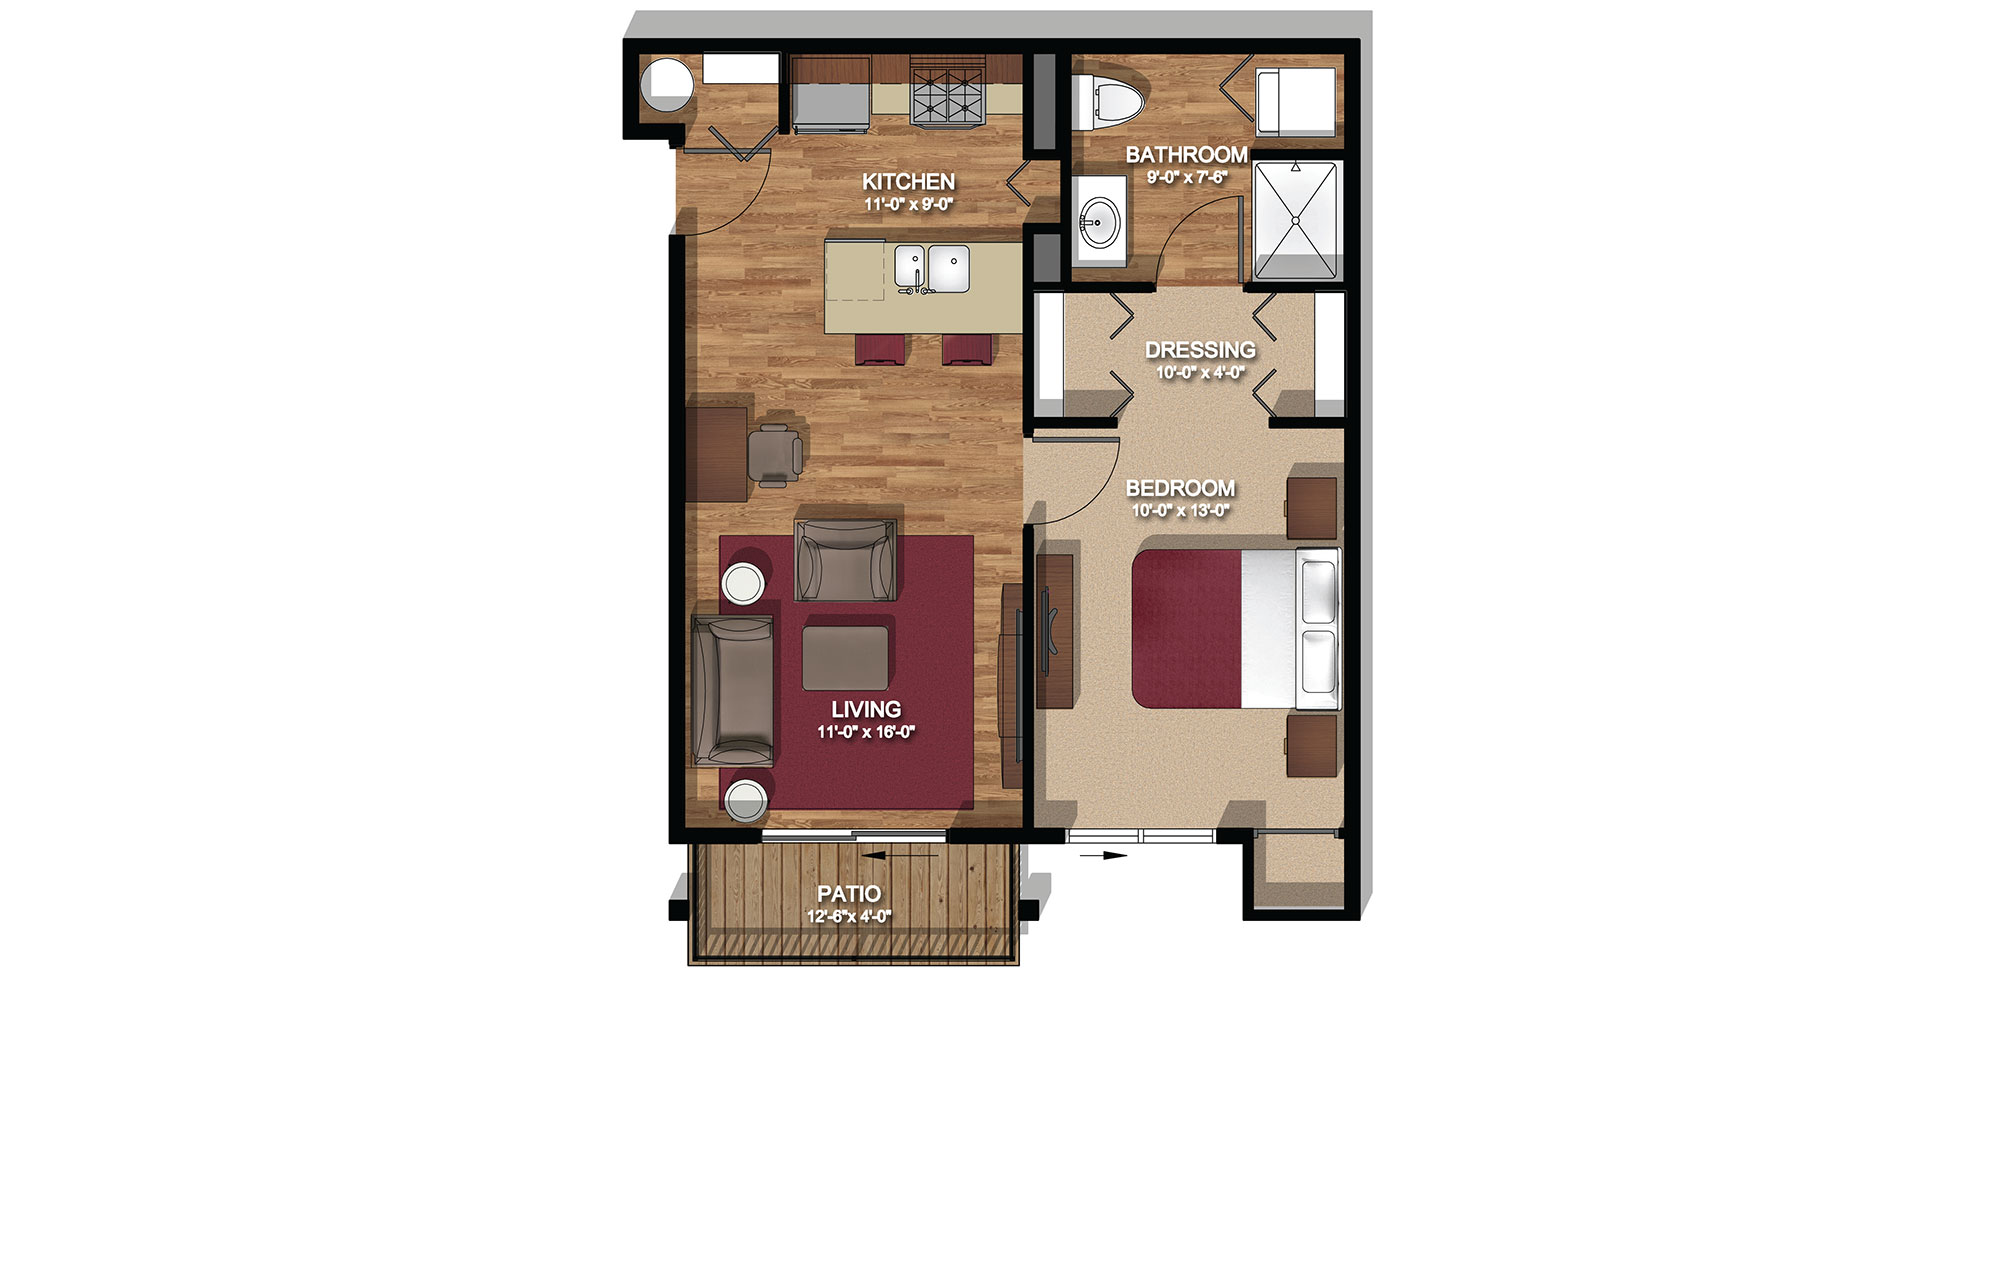 Standard Floor Plan - 592 s.f.